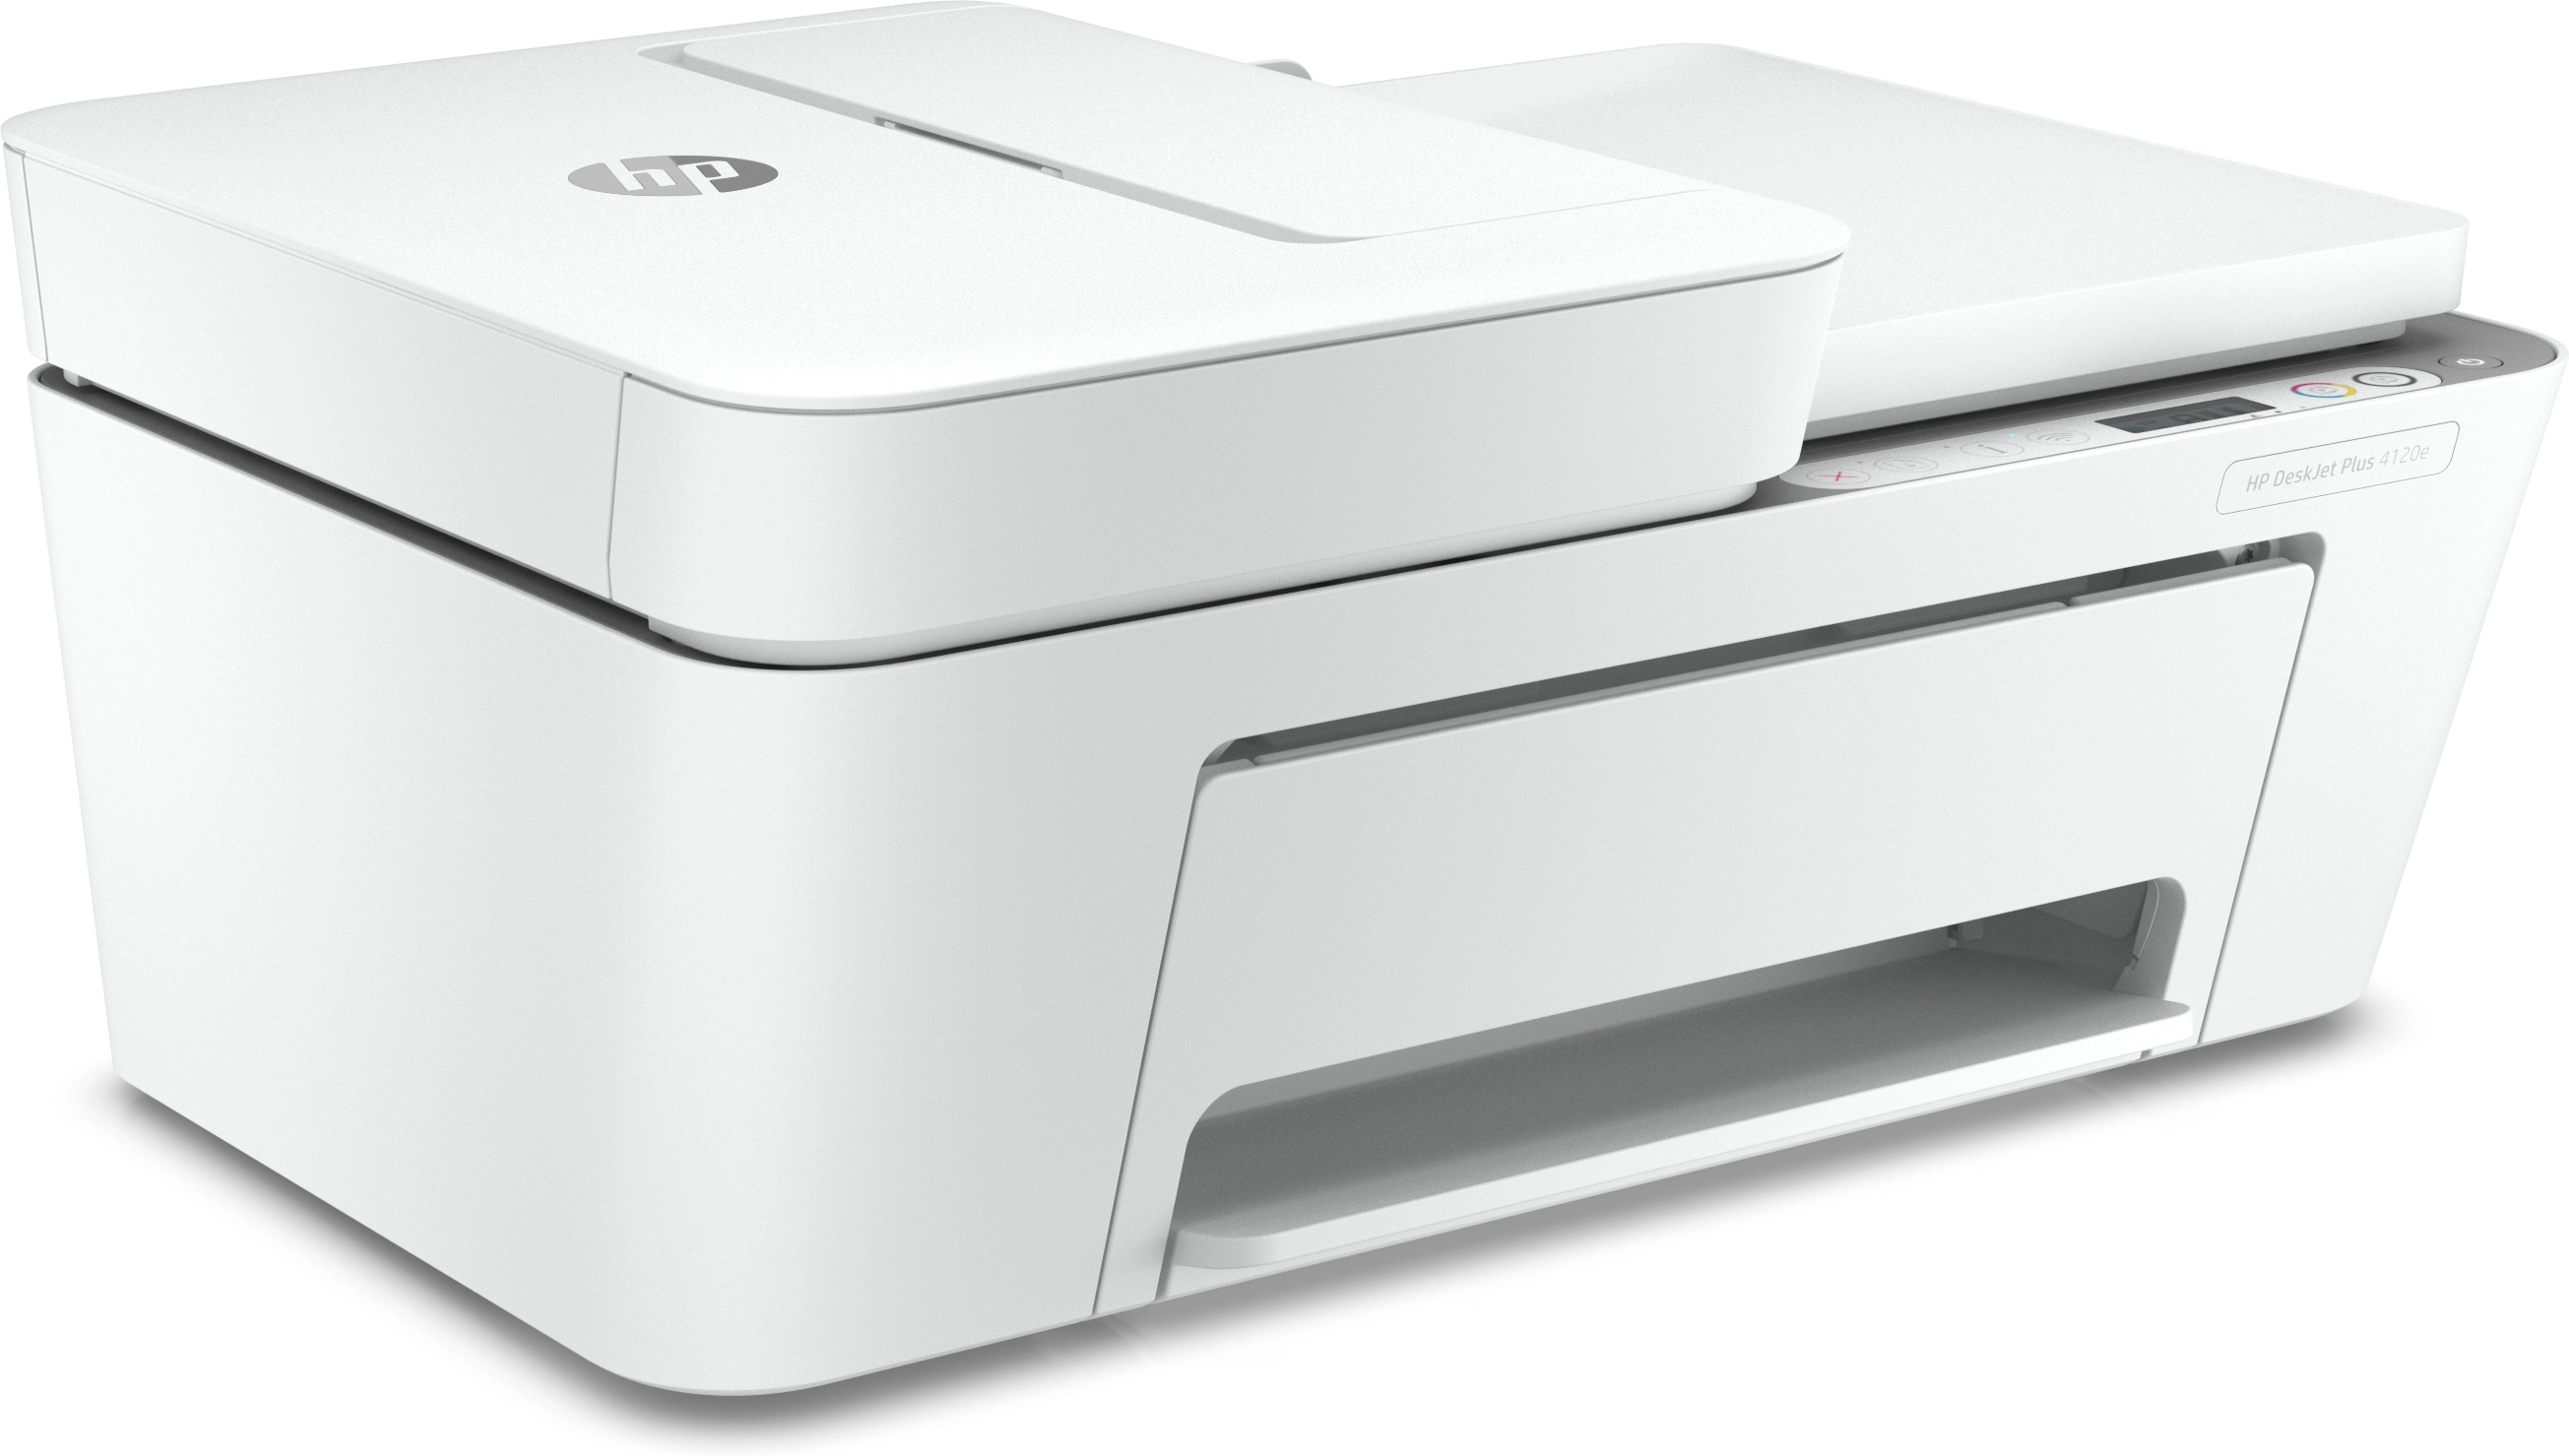 HP DeskJet 4120e - Thermal Inkjet - Farbdruck - 4800 x 1200 DPI - Farbkopieren - A4 - Grau - Weiß